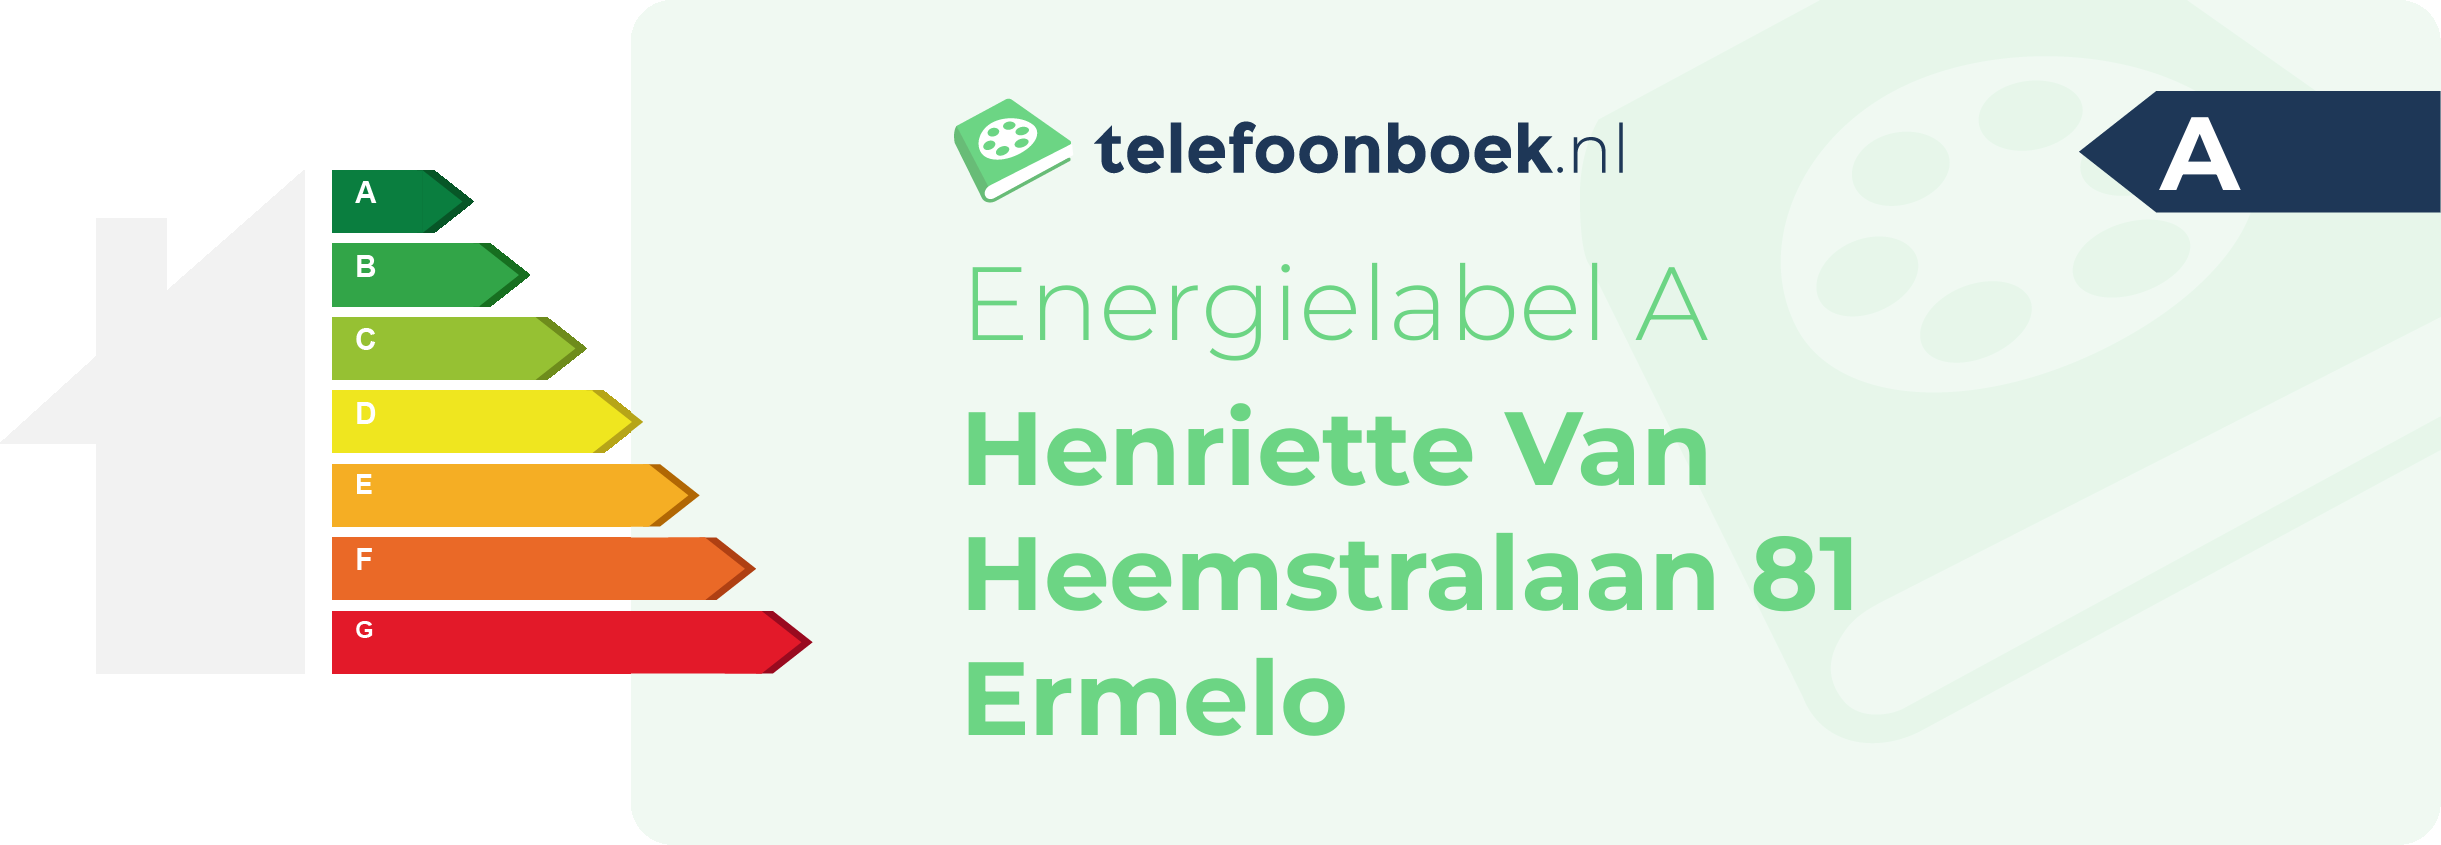 Energielabel Henriette Van Heemstralaan 81 Ermelo